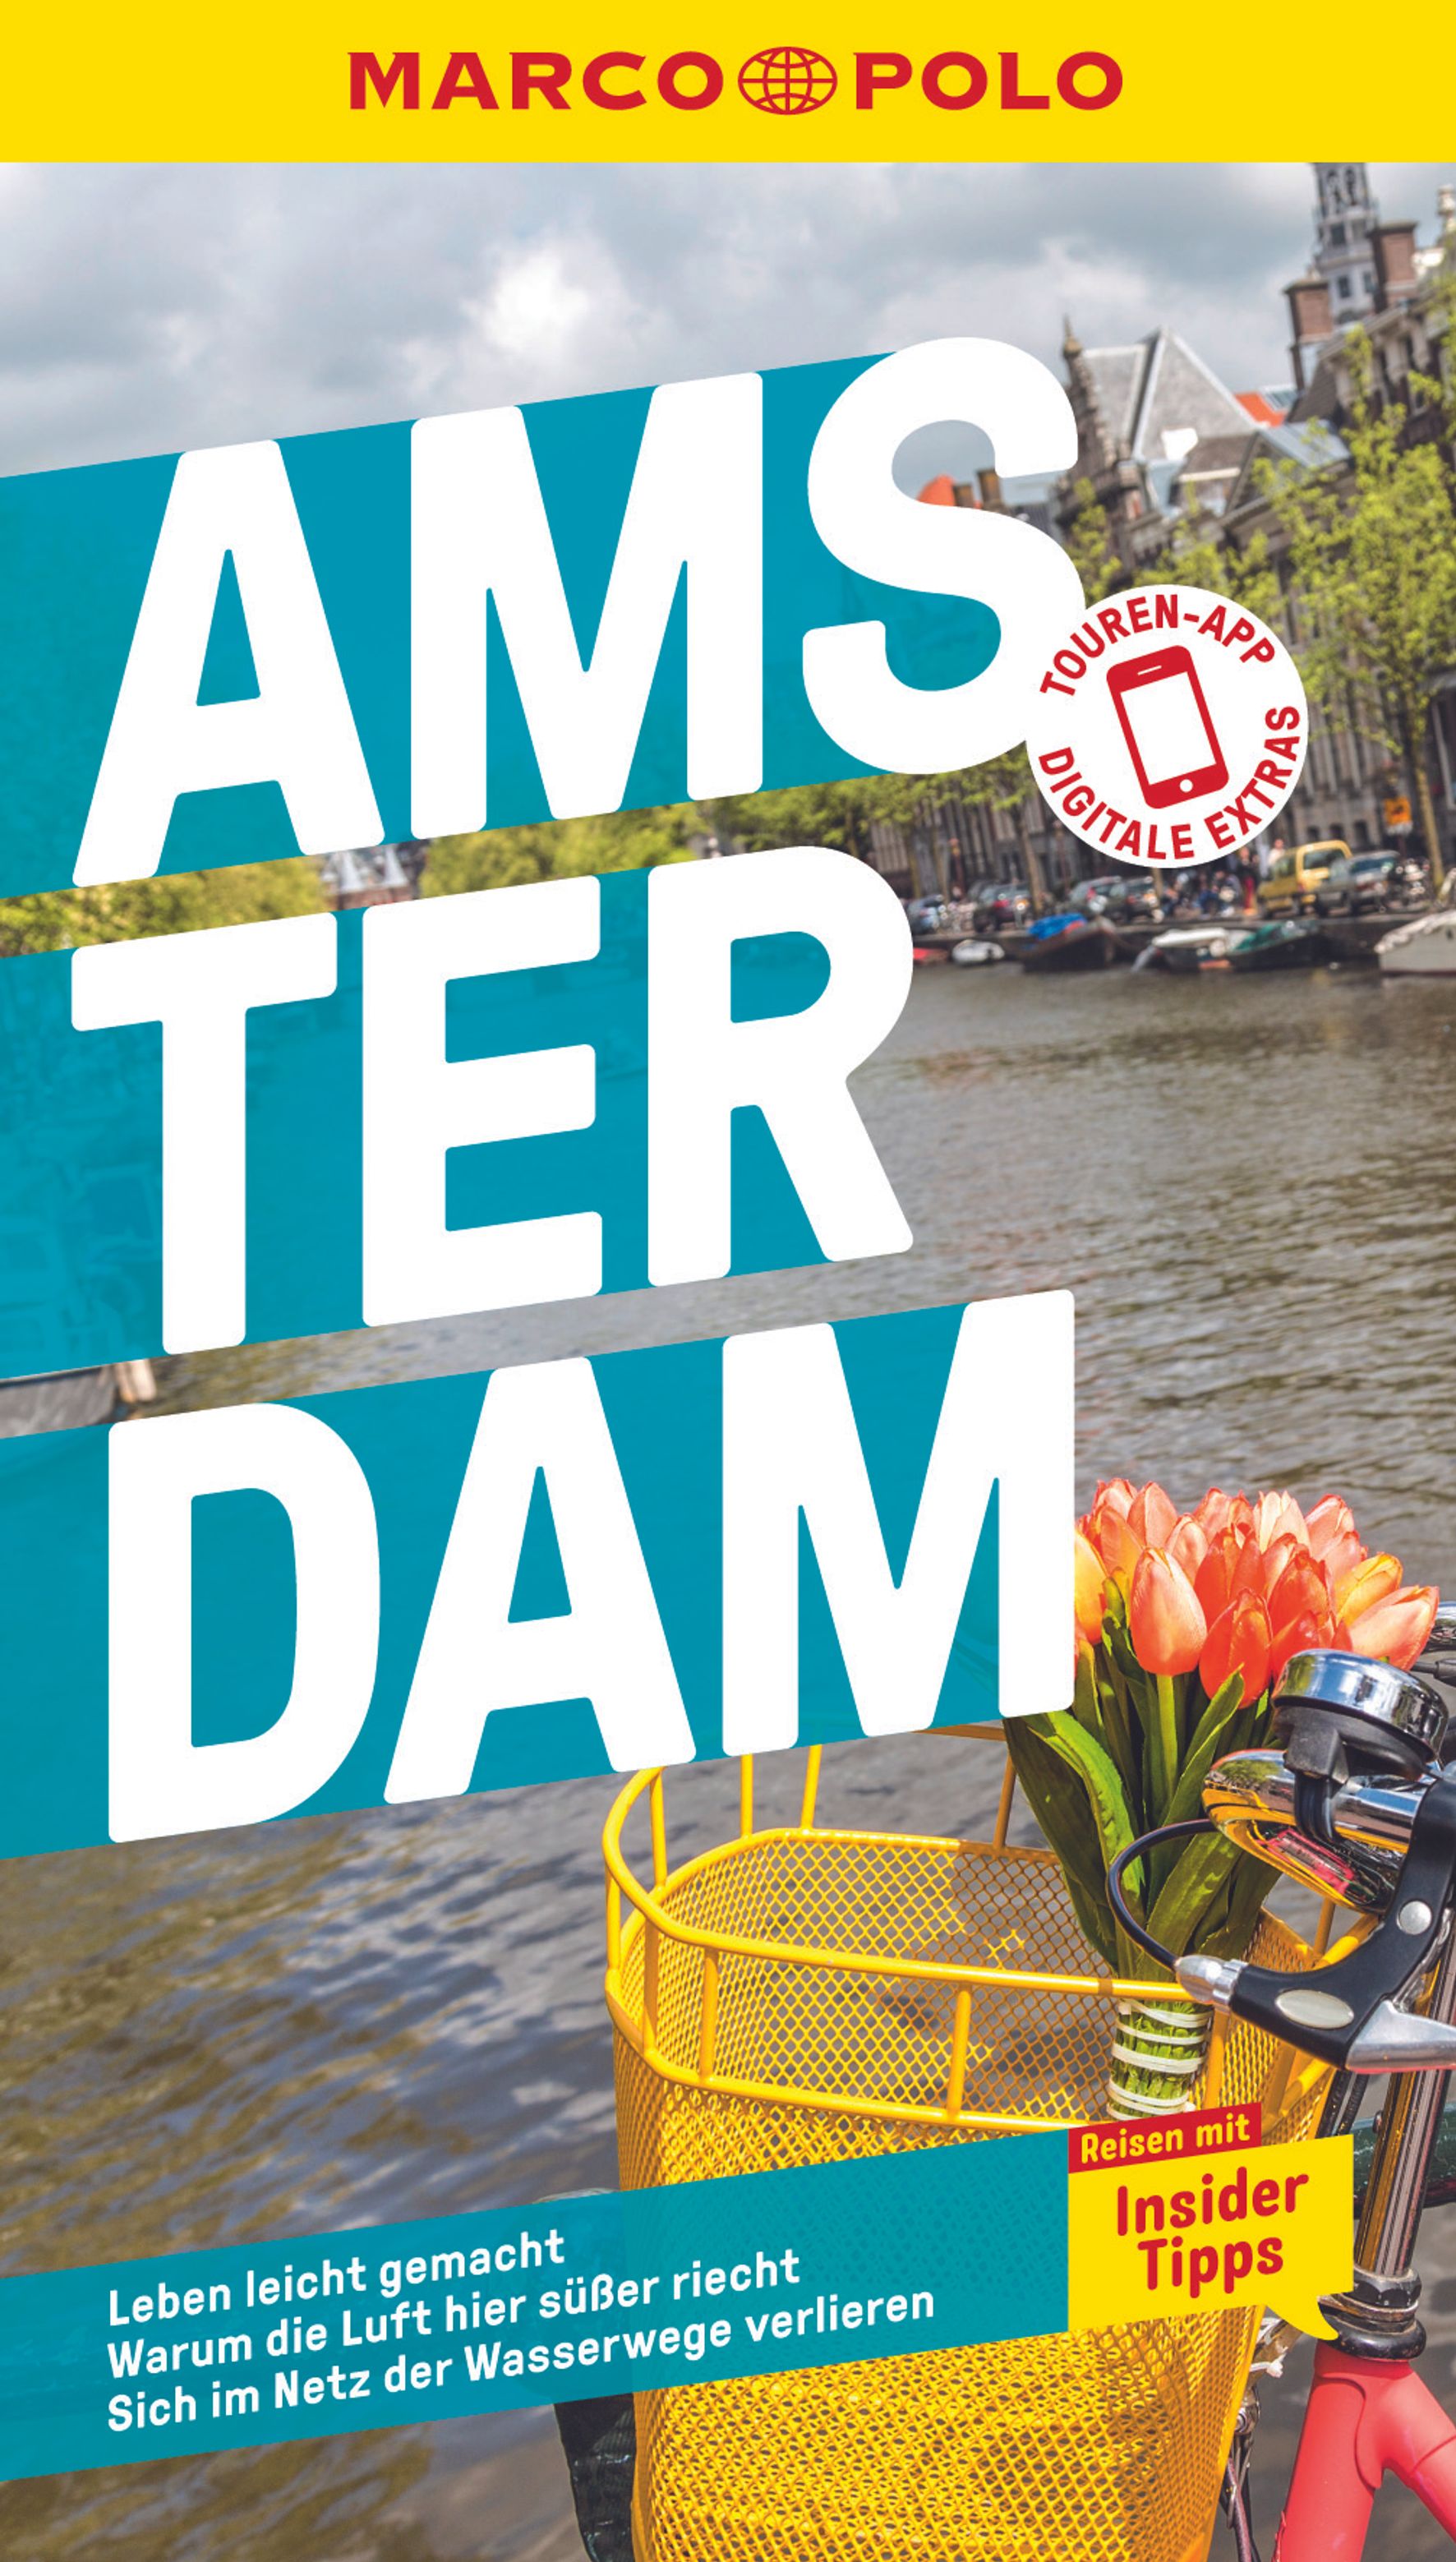 MAIRDUMONT Amsterdam (eBook)